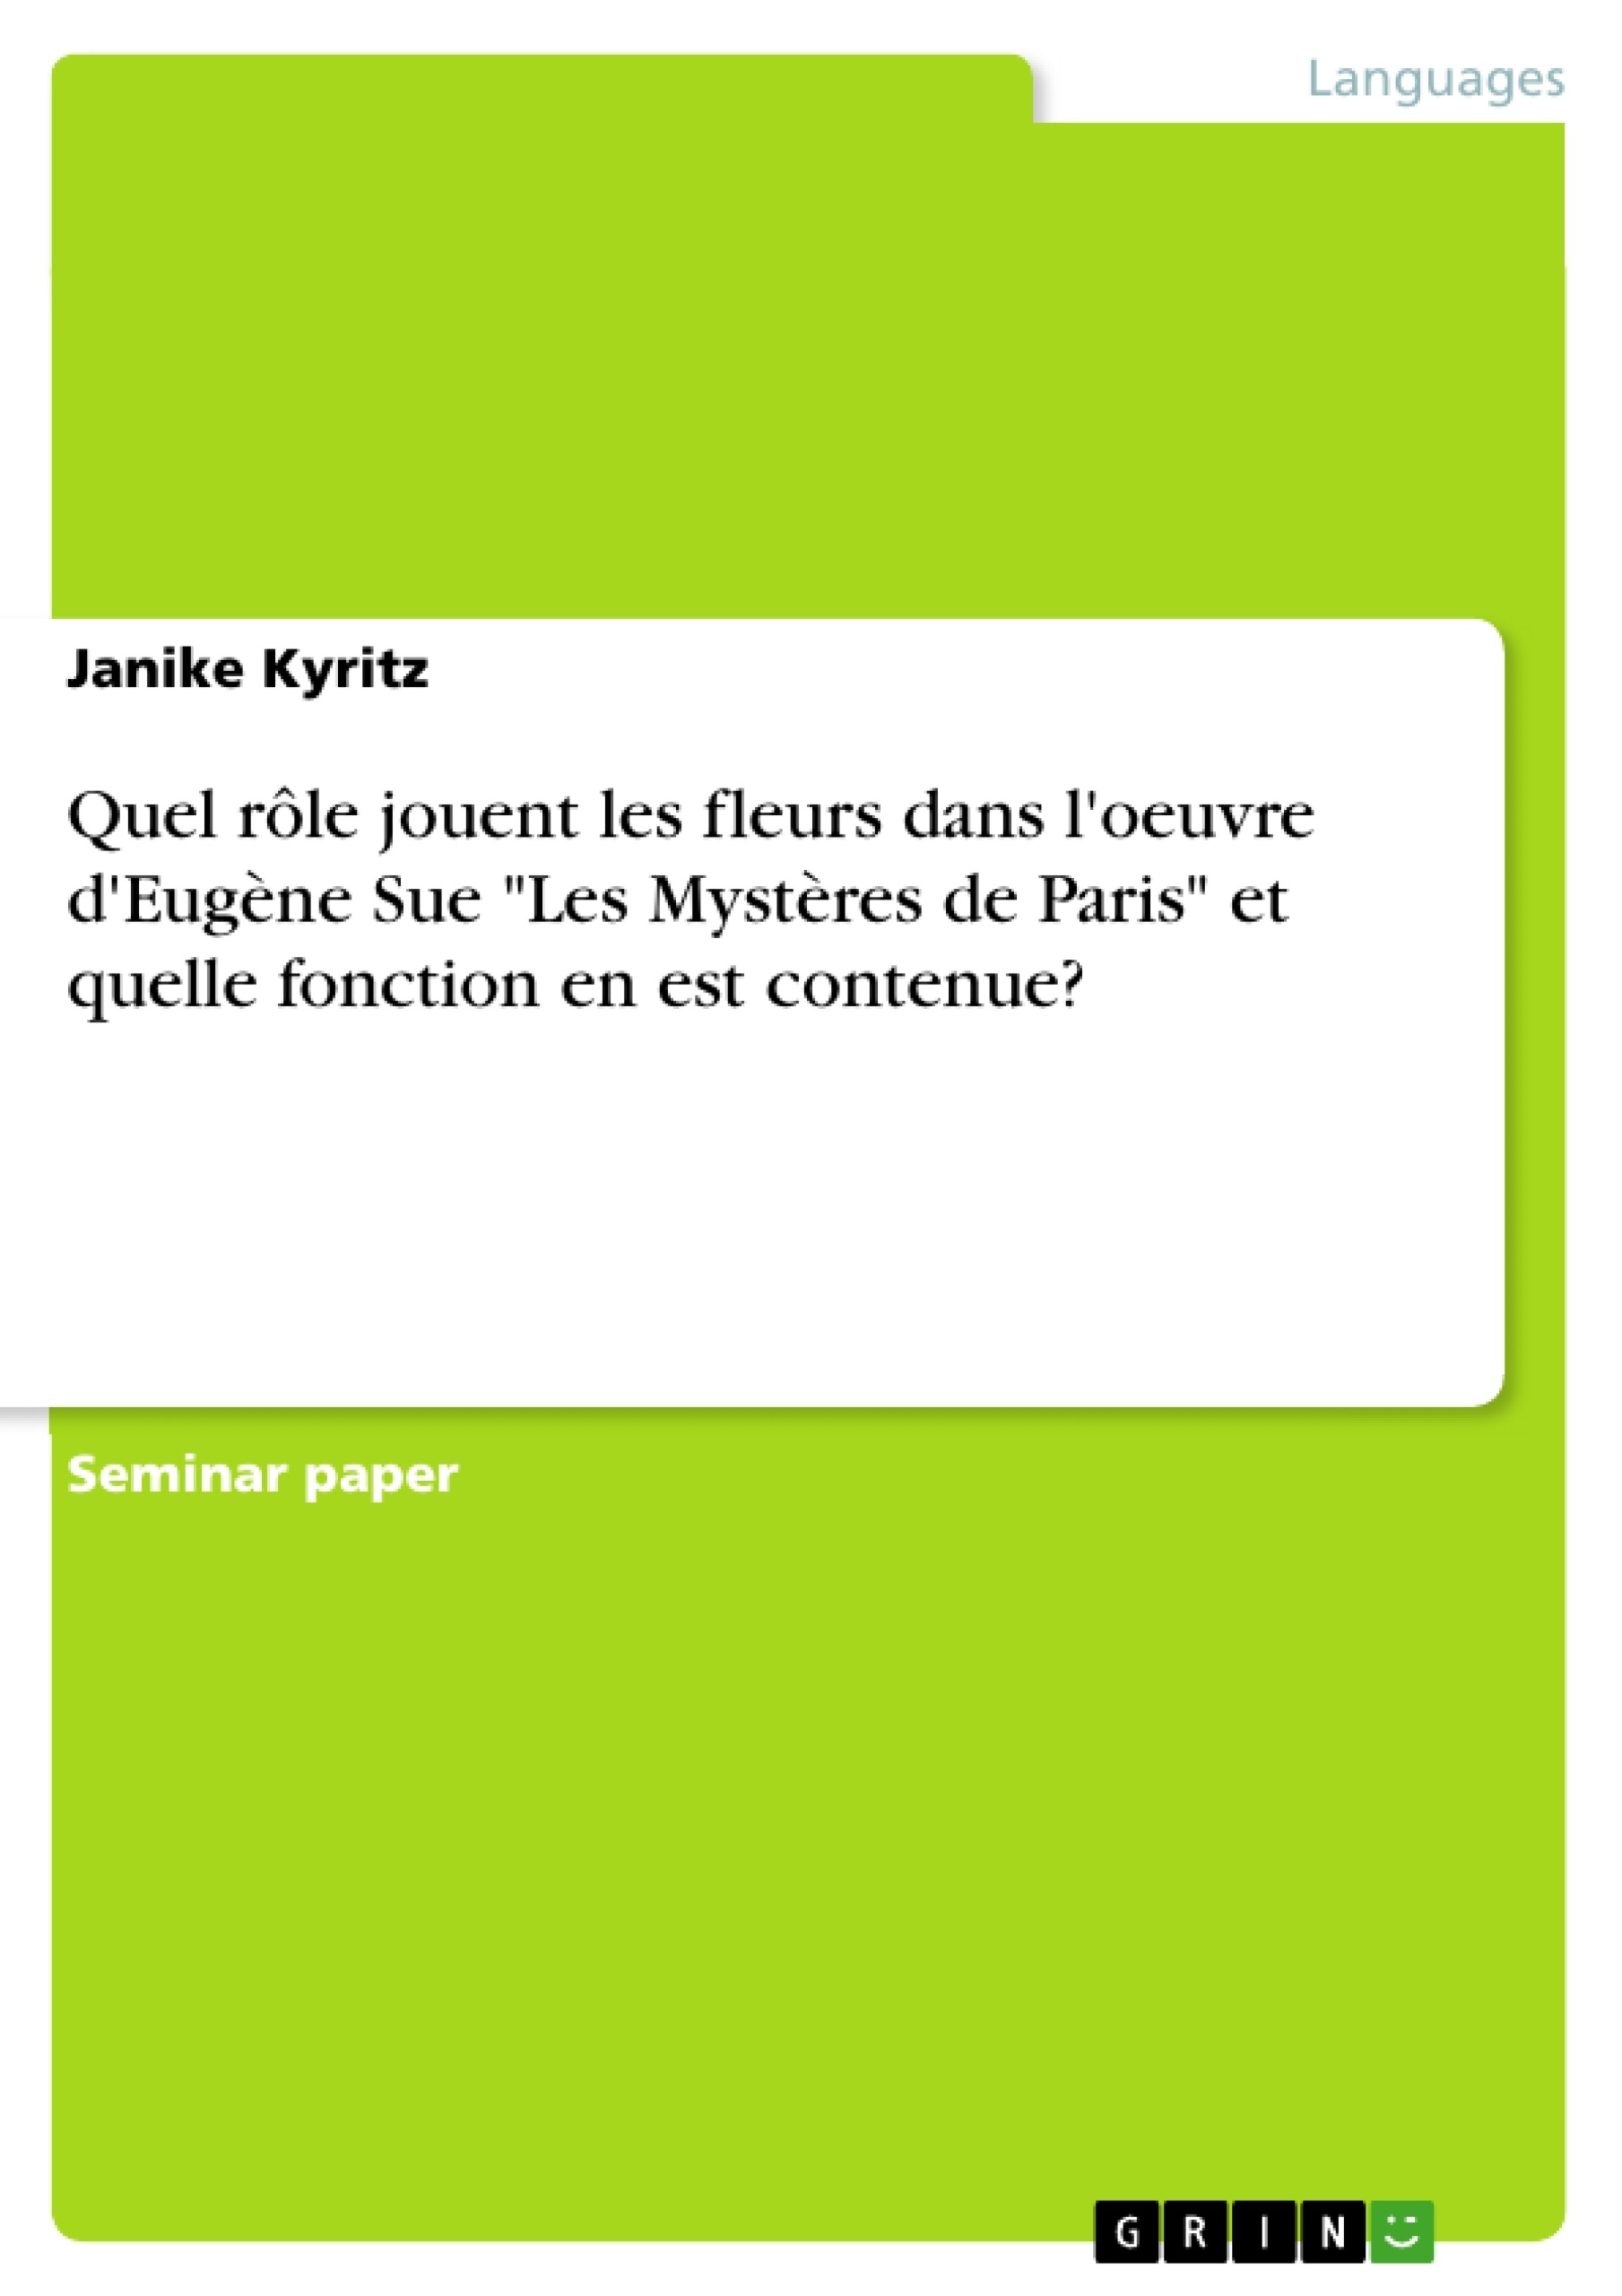 Titre: Quel rôle jouent les fleurs dans l'oeuvre d'Eugène Sue "Les Mystères de Paris" et quelle fonction en est contenue?